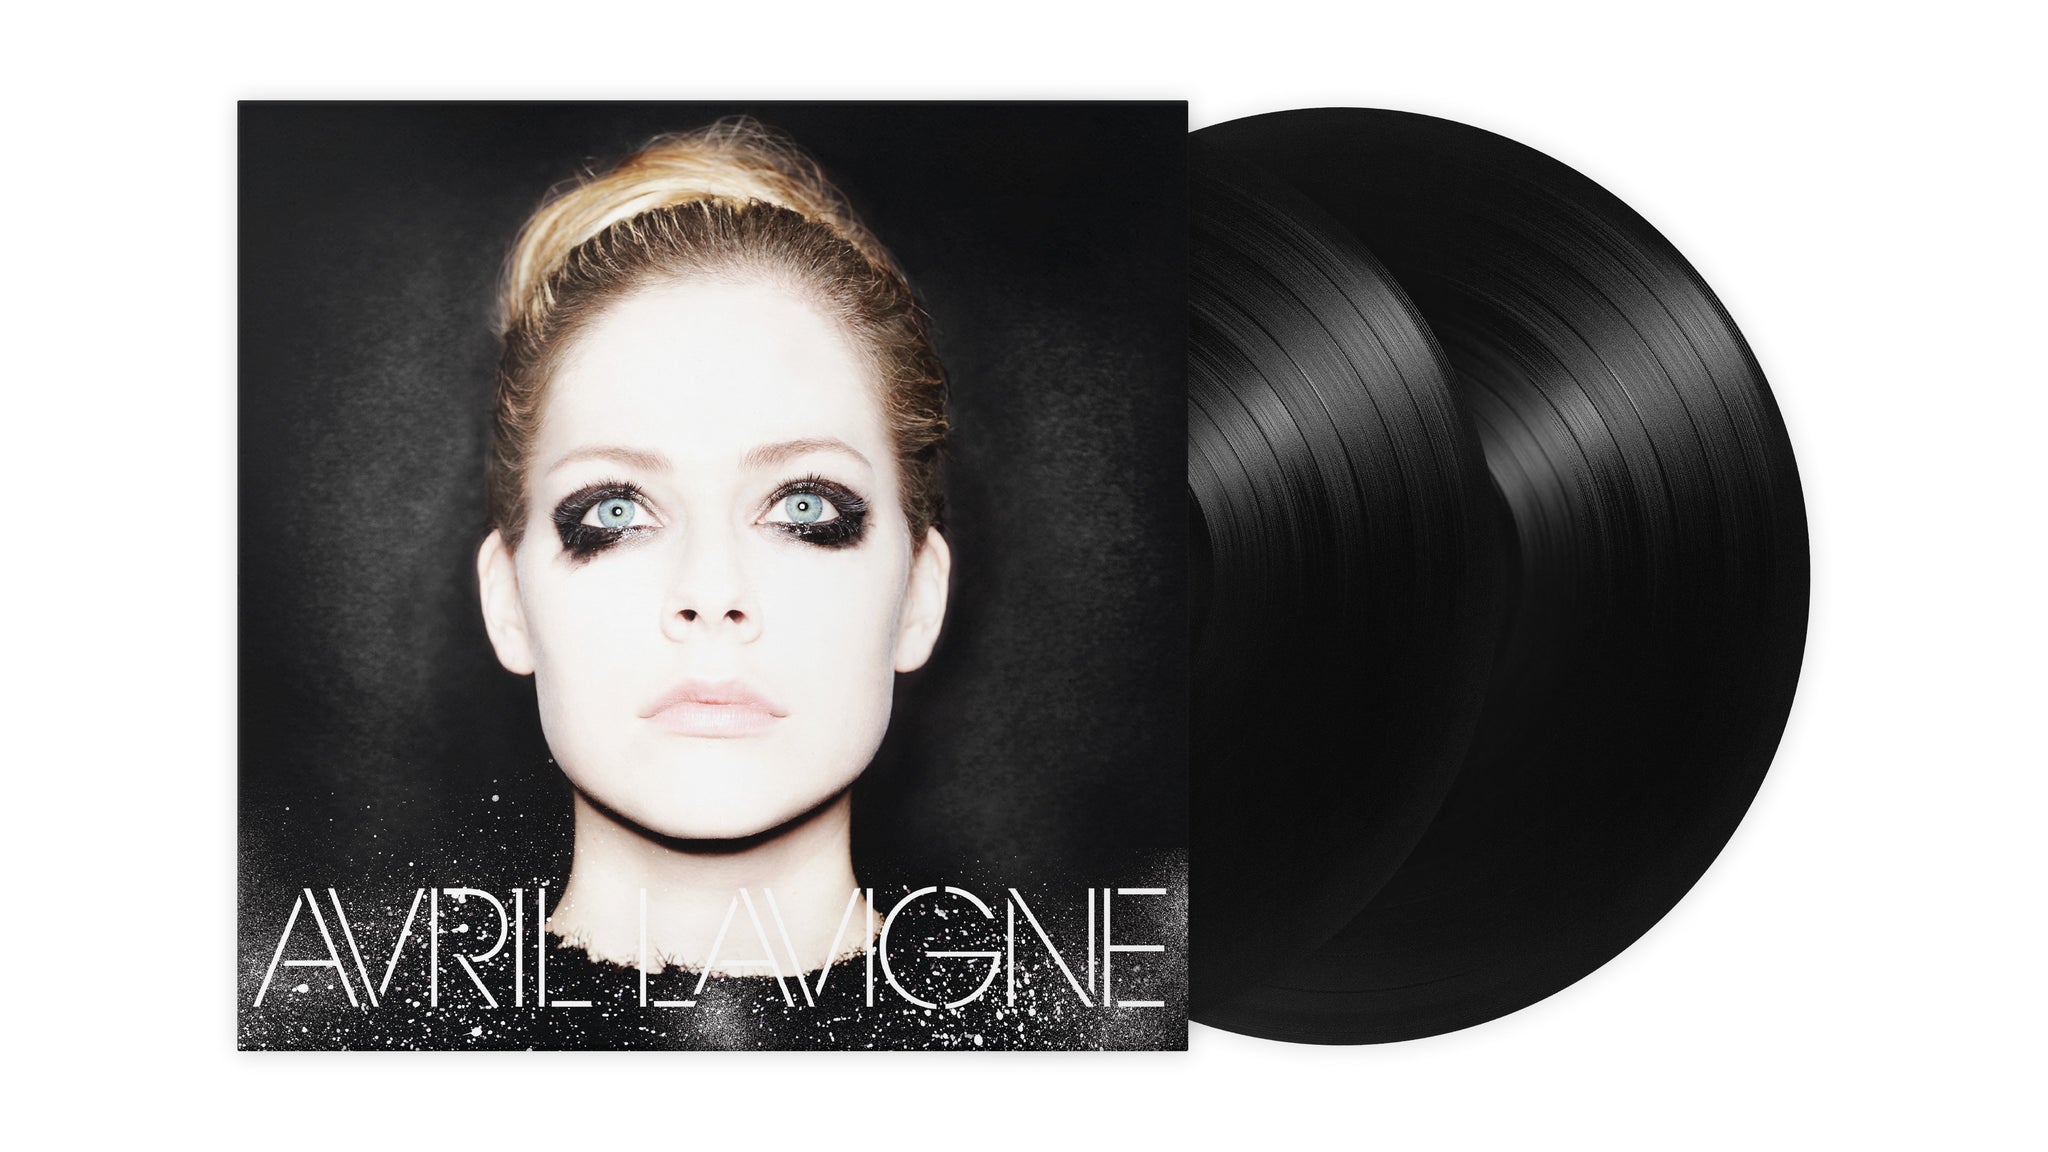 Avril Lavigne "Avril Lavigne" 2x12" Black Vinyl - PRE-ORDER